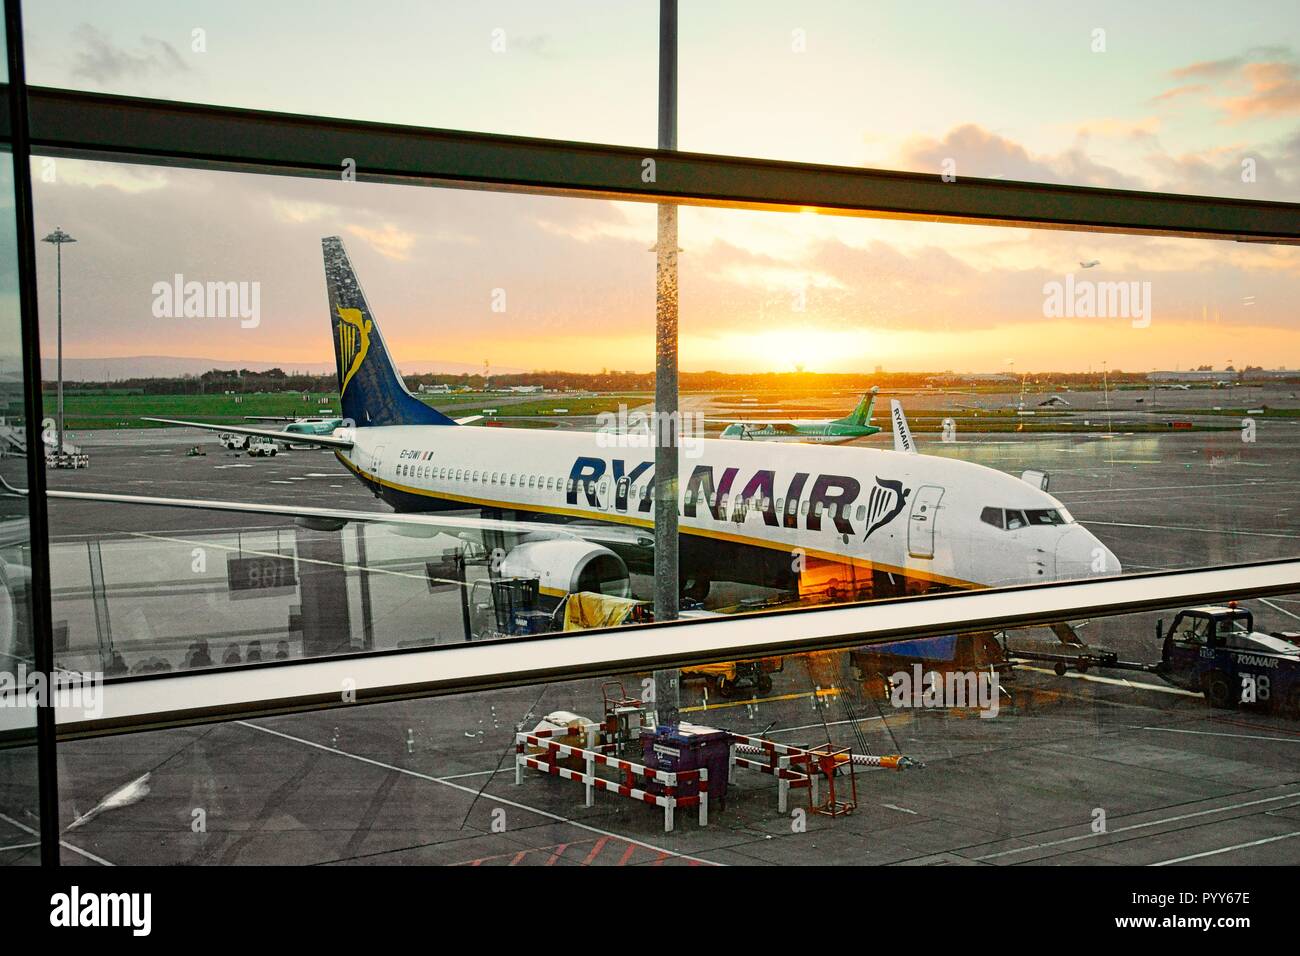 Avion de passagers Ryanair avion jet avion sur la piste entre les vols Tablier vu de portes d'embarquement de l'Aérogare de l'aéroport de Dublin, Irlande Banque D'Images